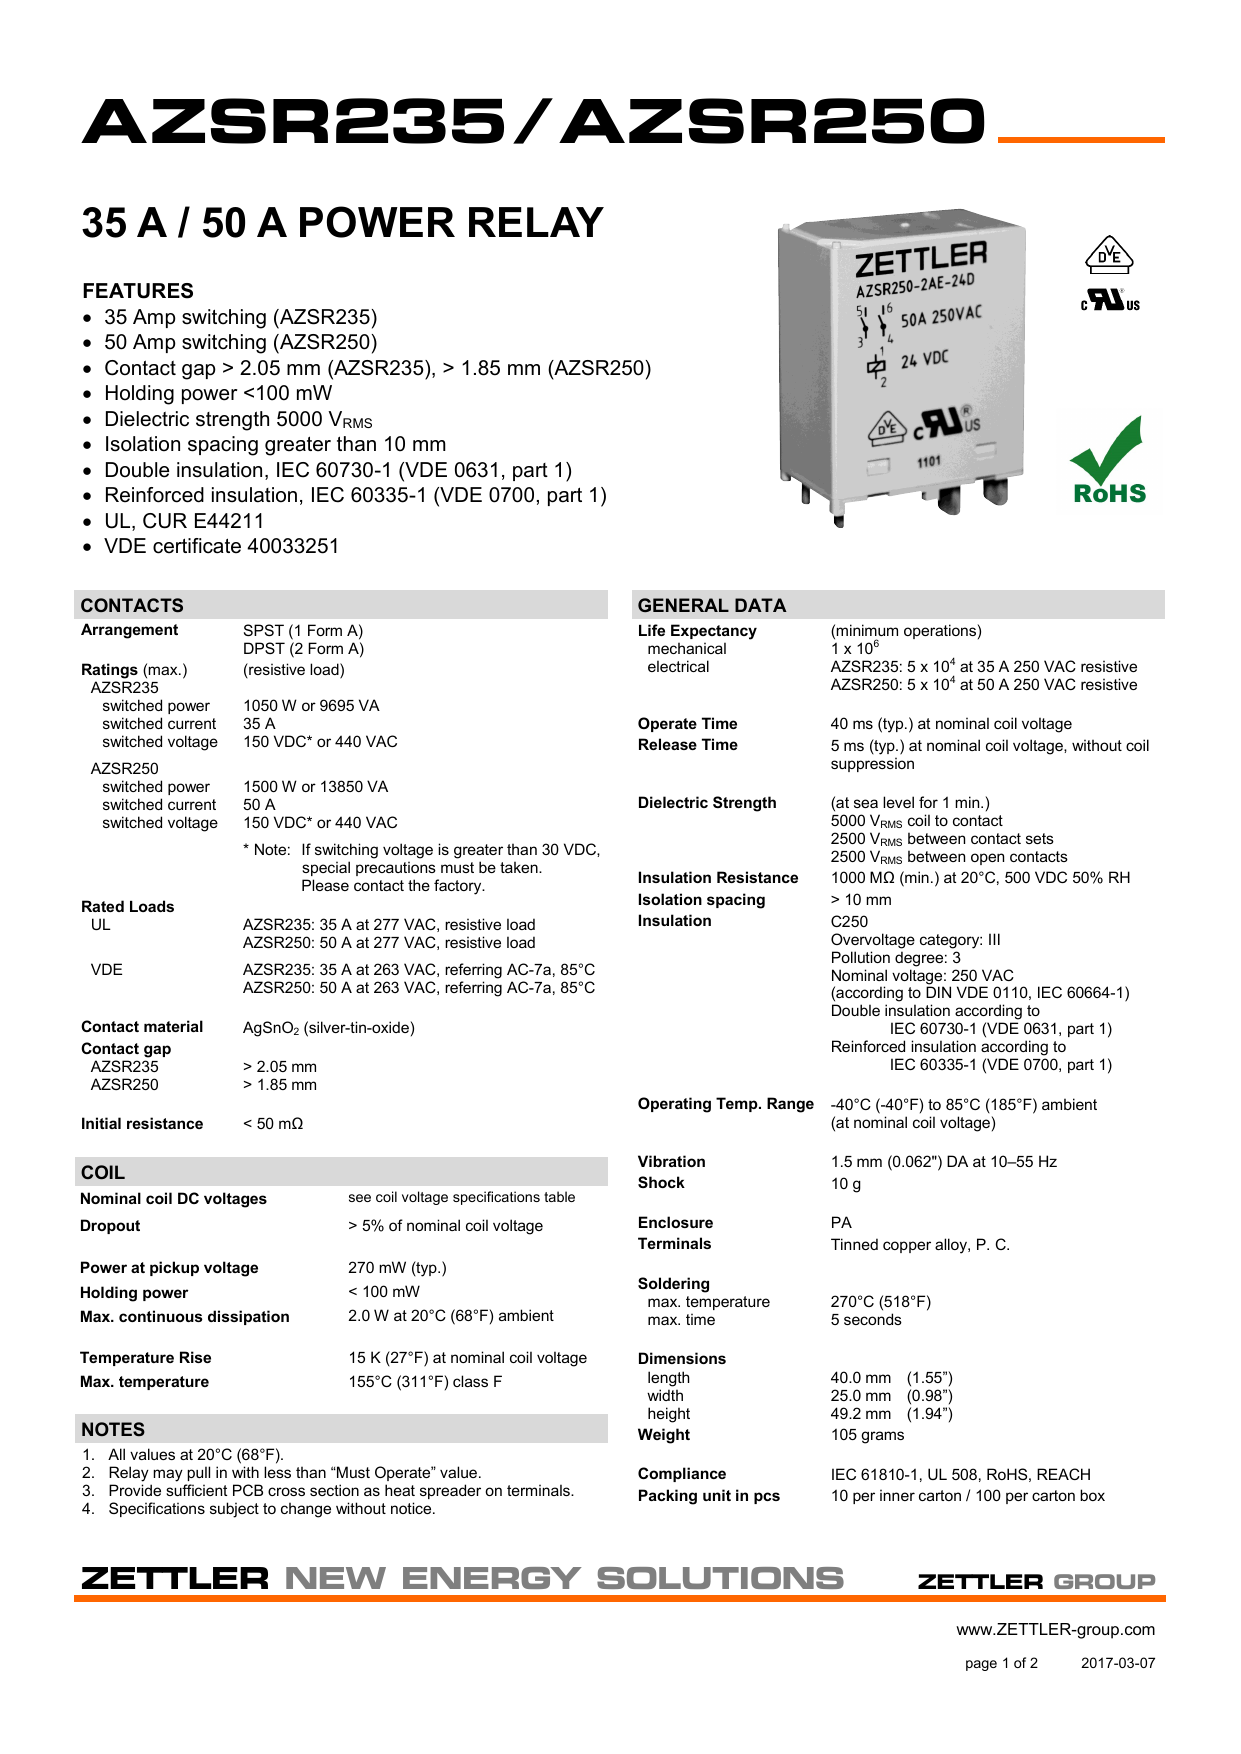 Azsr235 250 Zettler Electronics Gmbh Manualzz